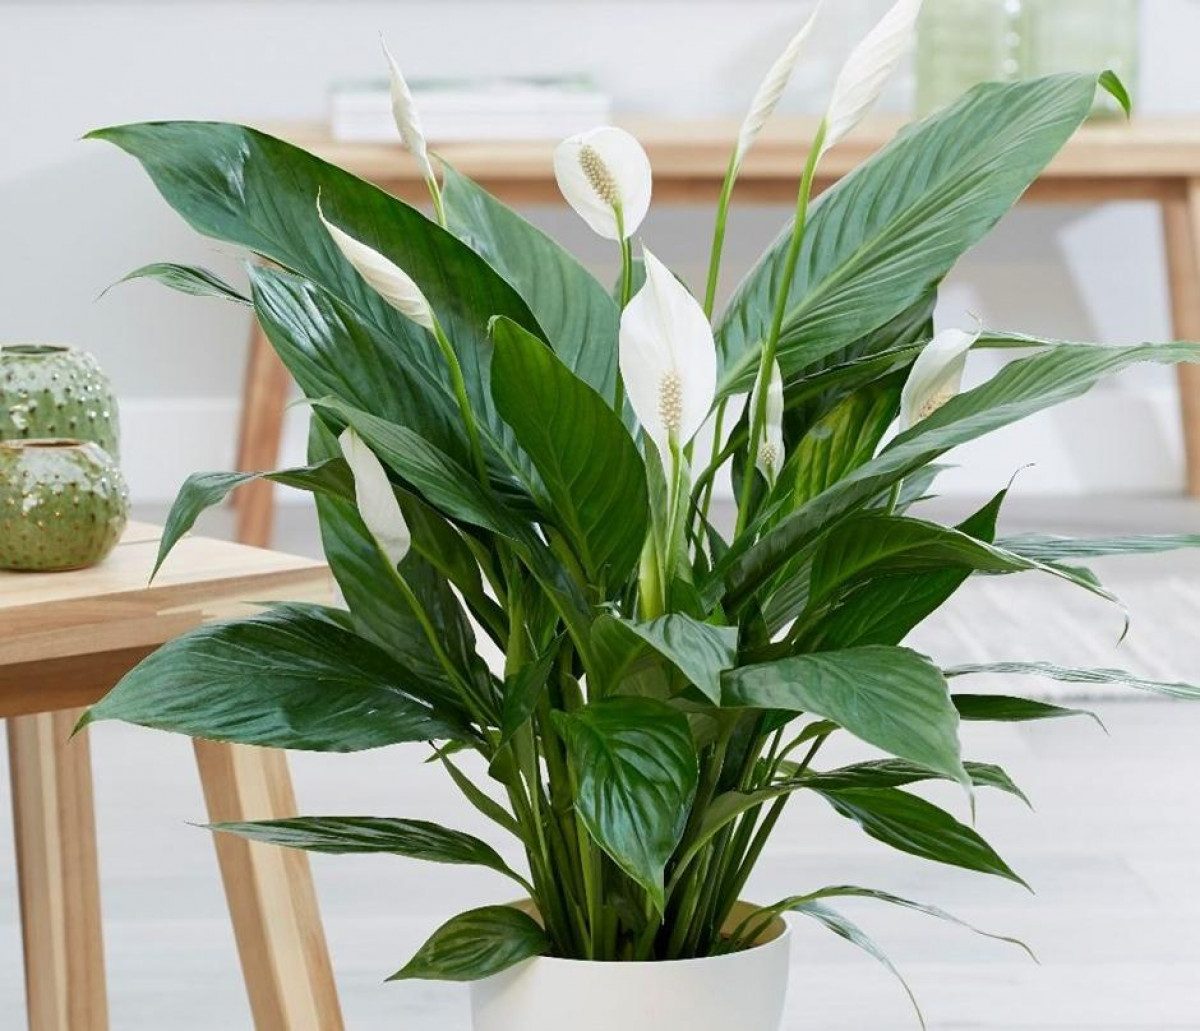 Какие комнатные растения хорошо впитывают влагу и помогут избавиться от плесени в квартире